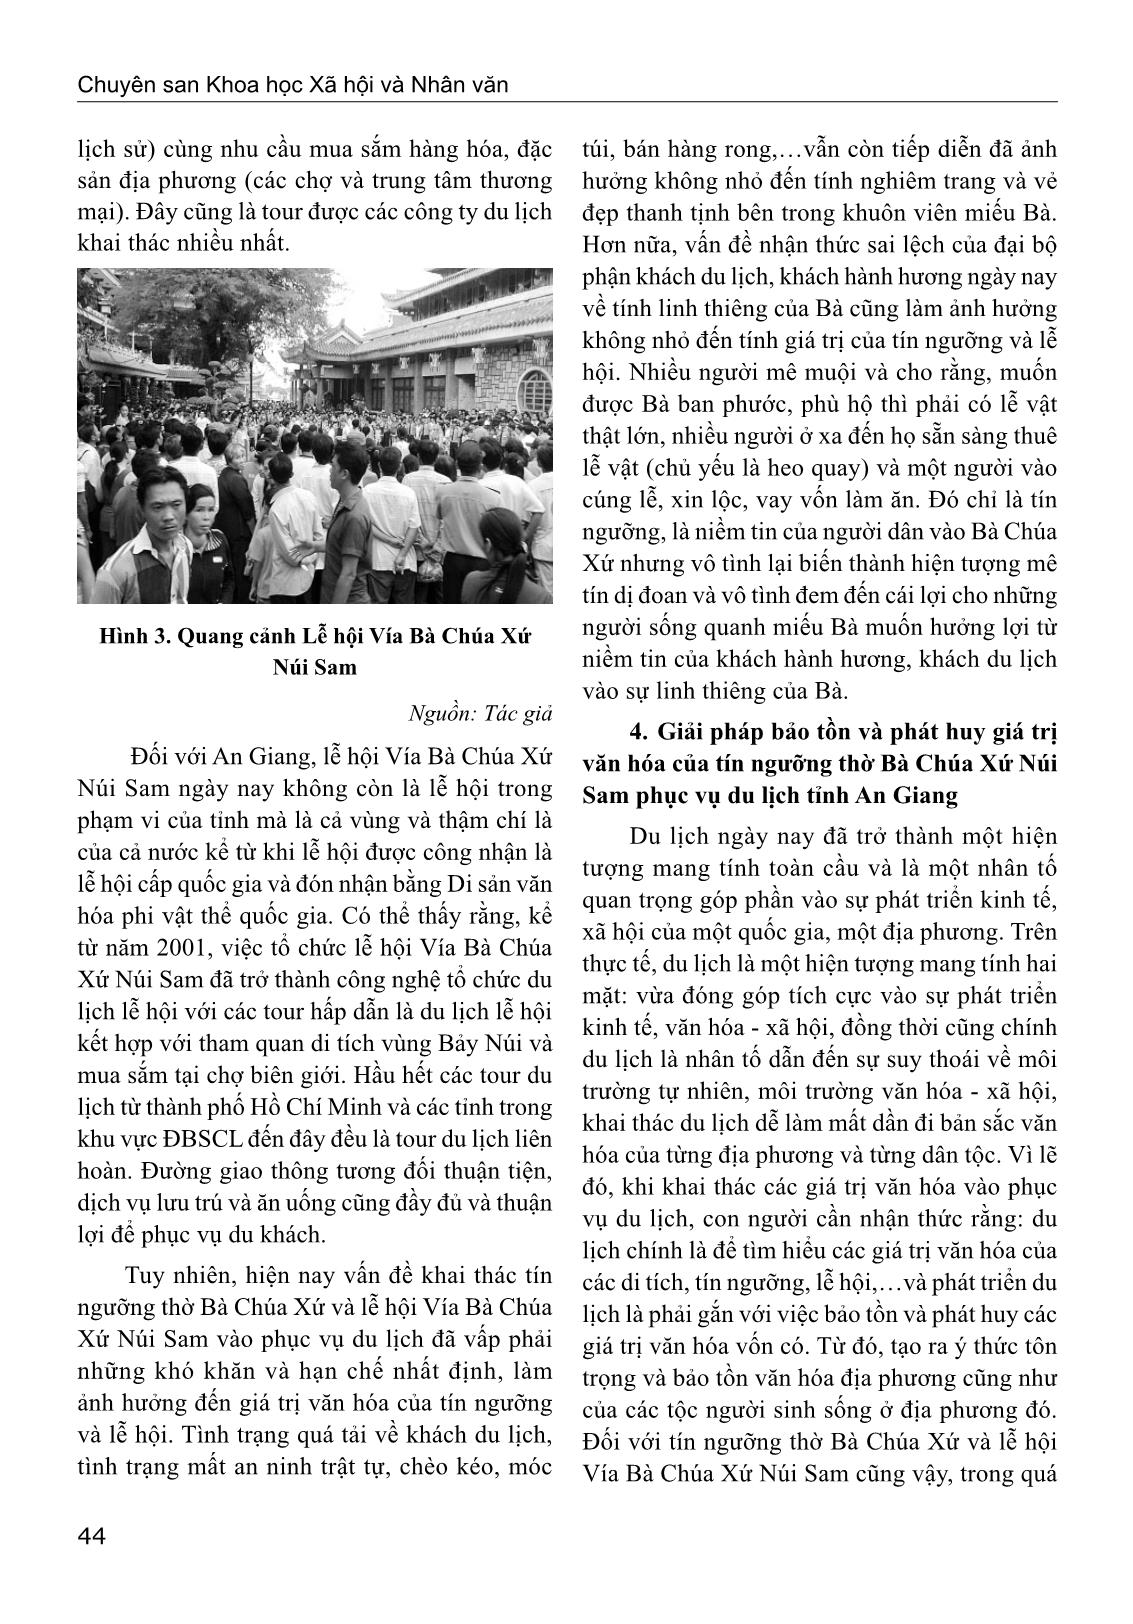 Giá trị văn hóa của tín ngưỡng thờ Bà Chúa Xứ núi Sam trong phát triển du lịch tỉnh An Giang trang 8